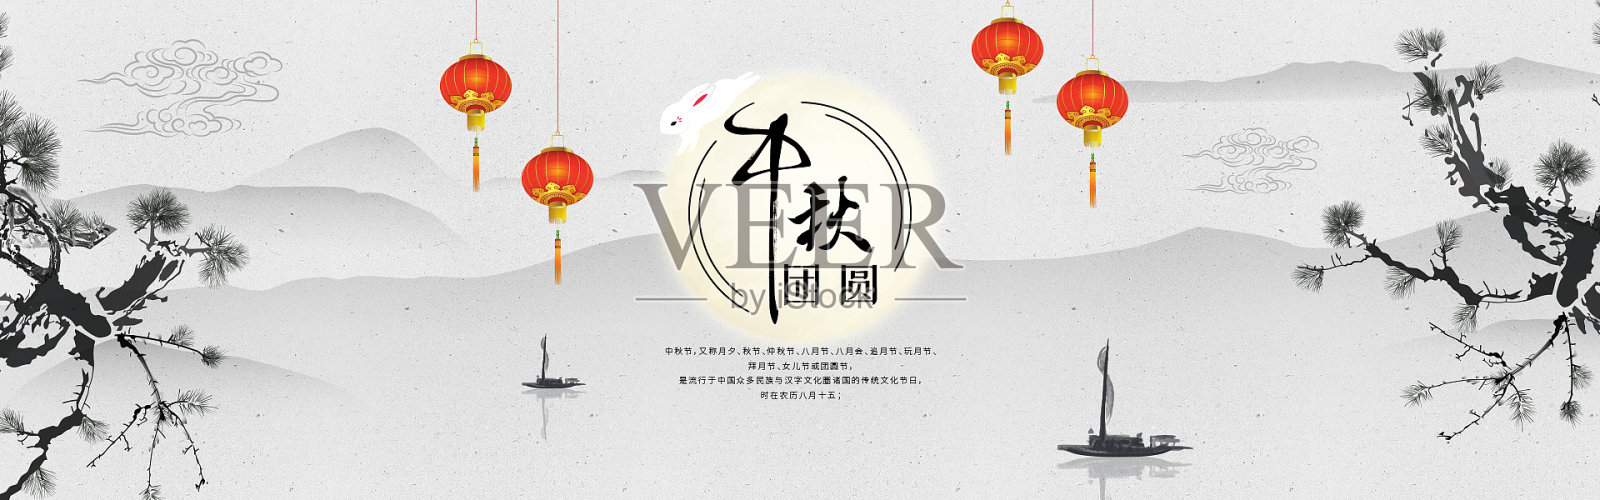 电商水墨风中秋节促销海报设计模板素材